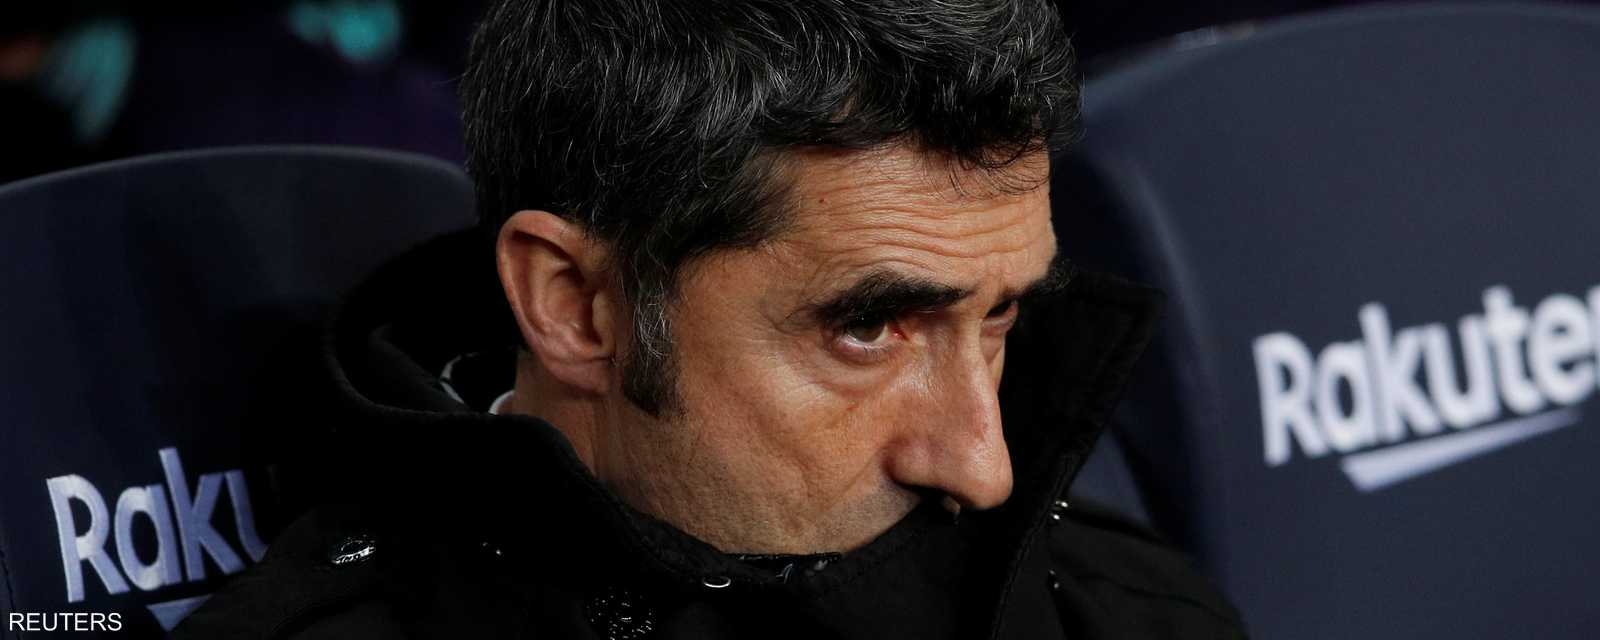 قاد المدرب البالغ من العمر 55 عاما برشلونة للفوز بثنائية الدوري والكأس في إسبانيا الموسم الماضي.